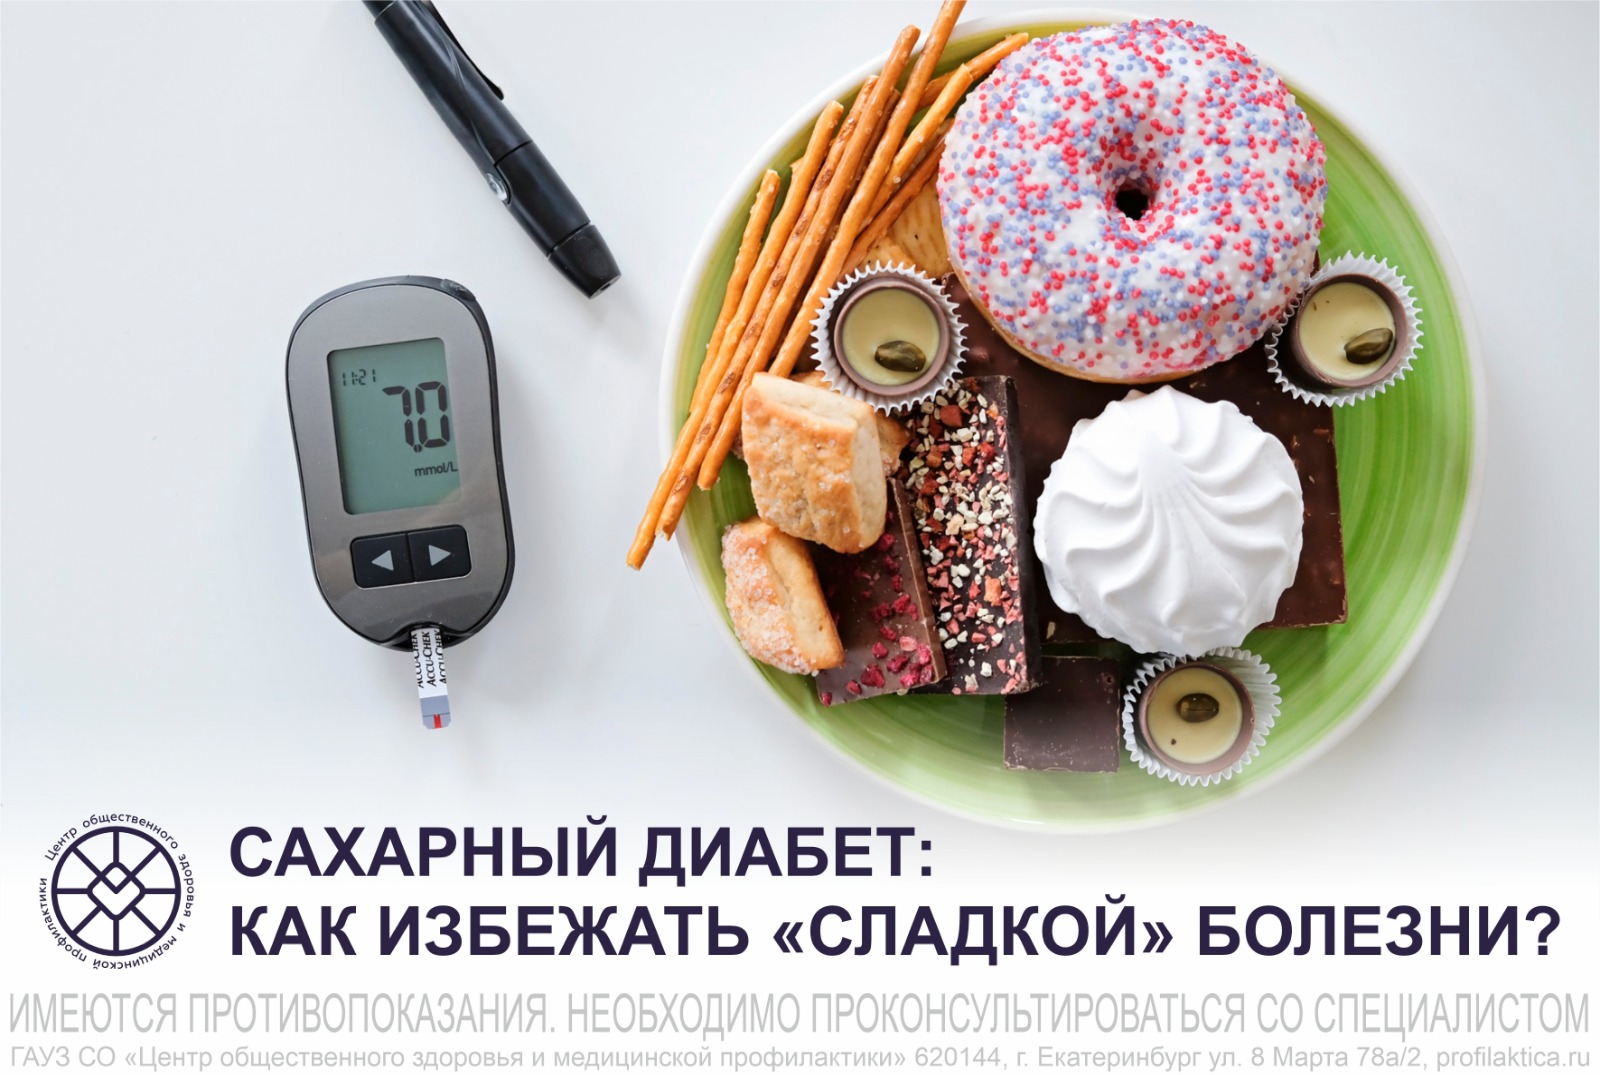 Почему важно правильно питаться и как, контролируя питание, избежать диабета